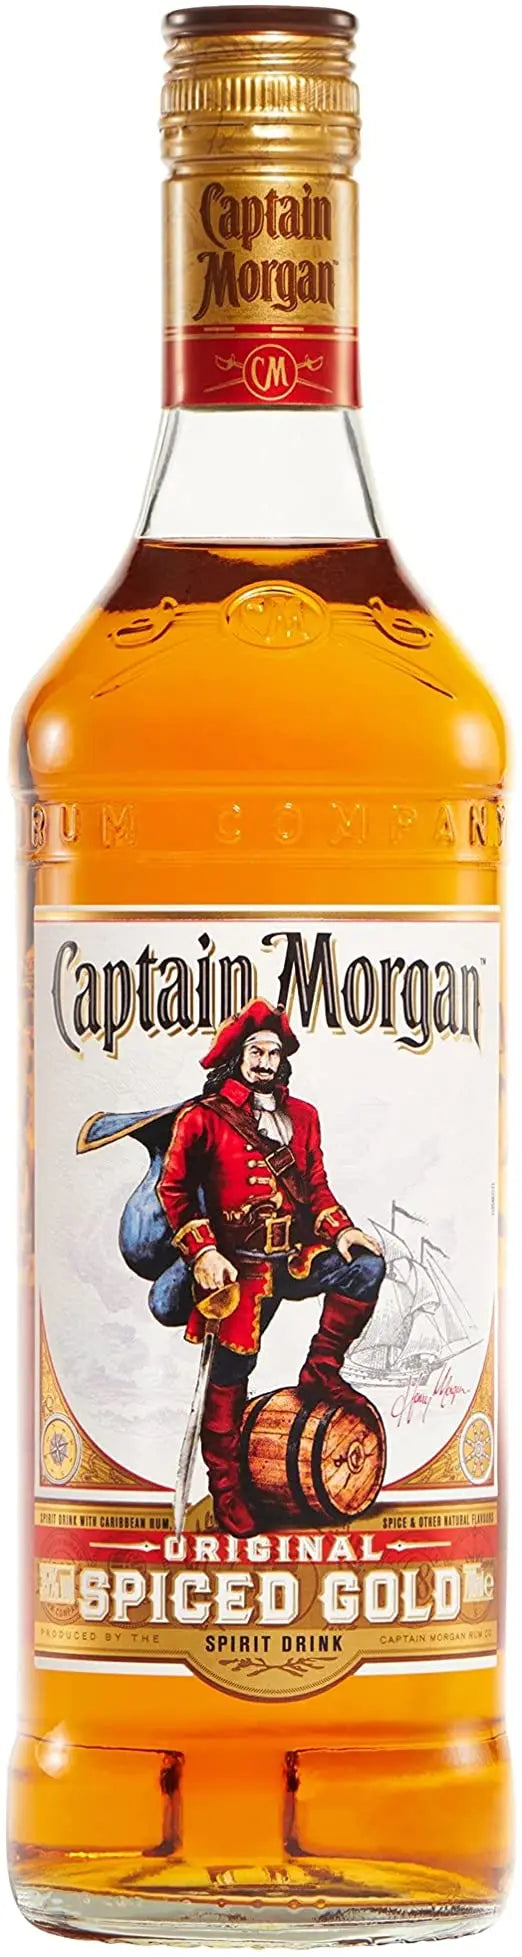 Captain Morgan Spiced Gold Rum (1x100cl) - TwoMoreGlasses.com